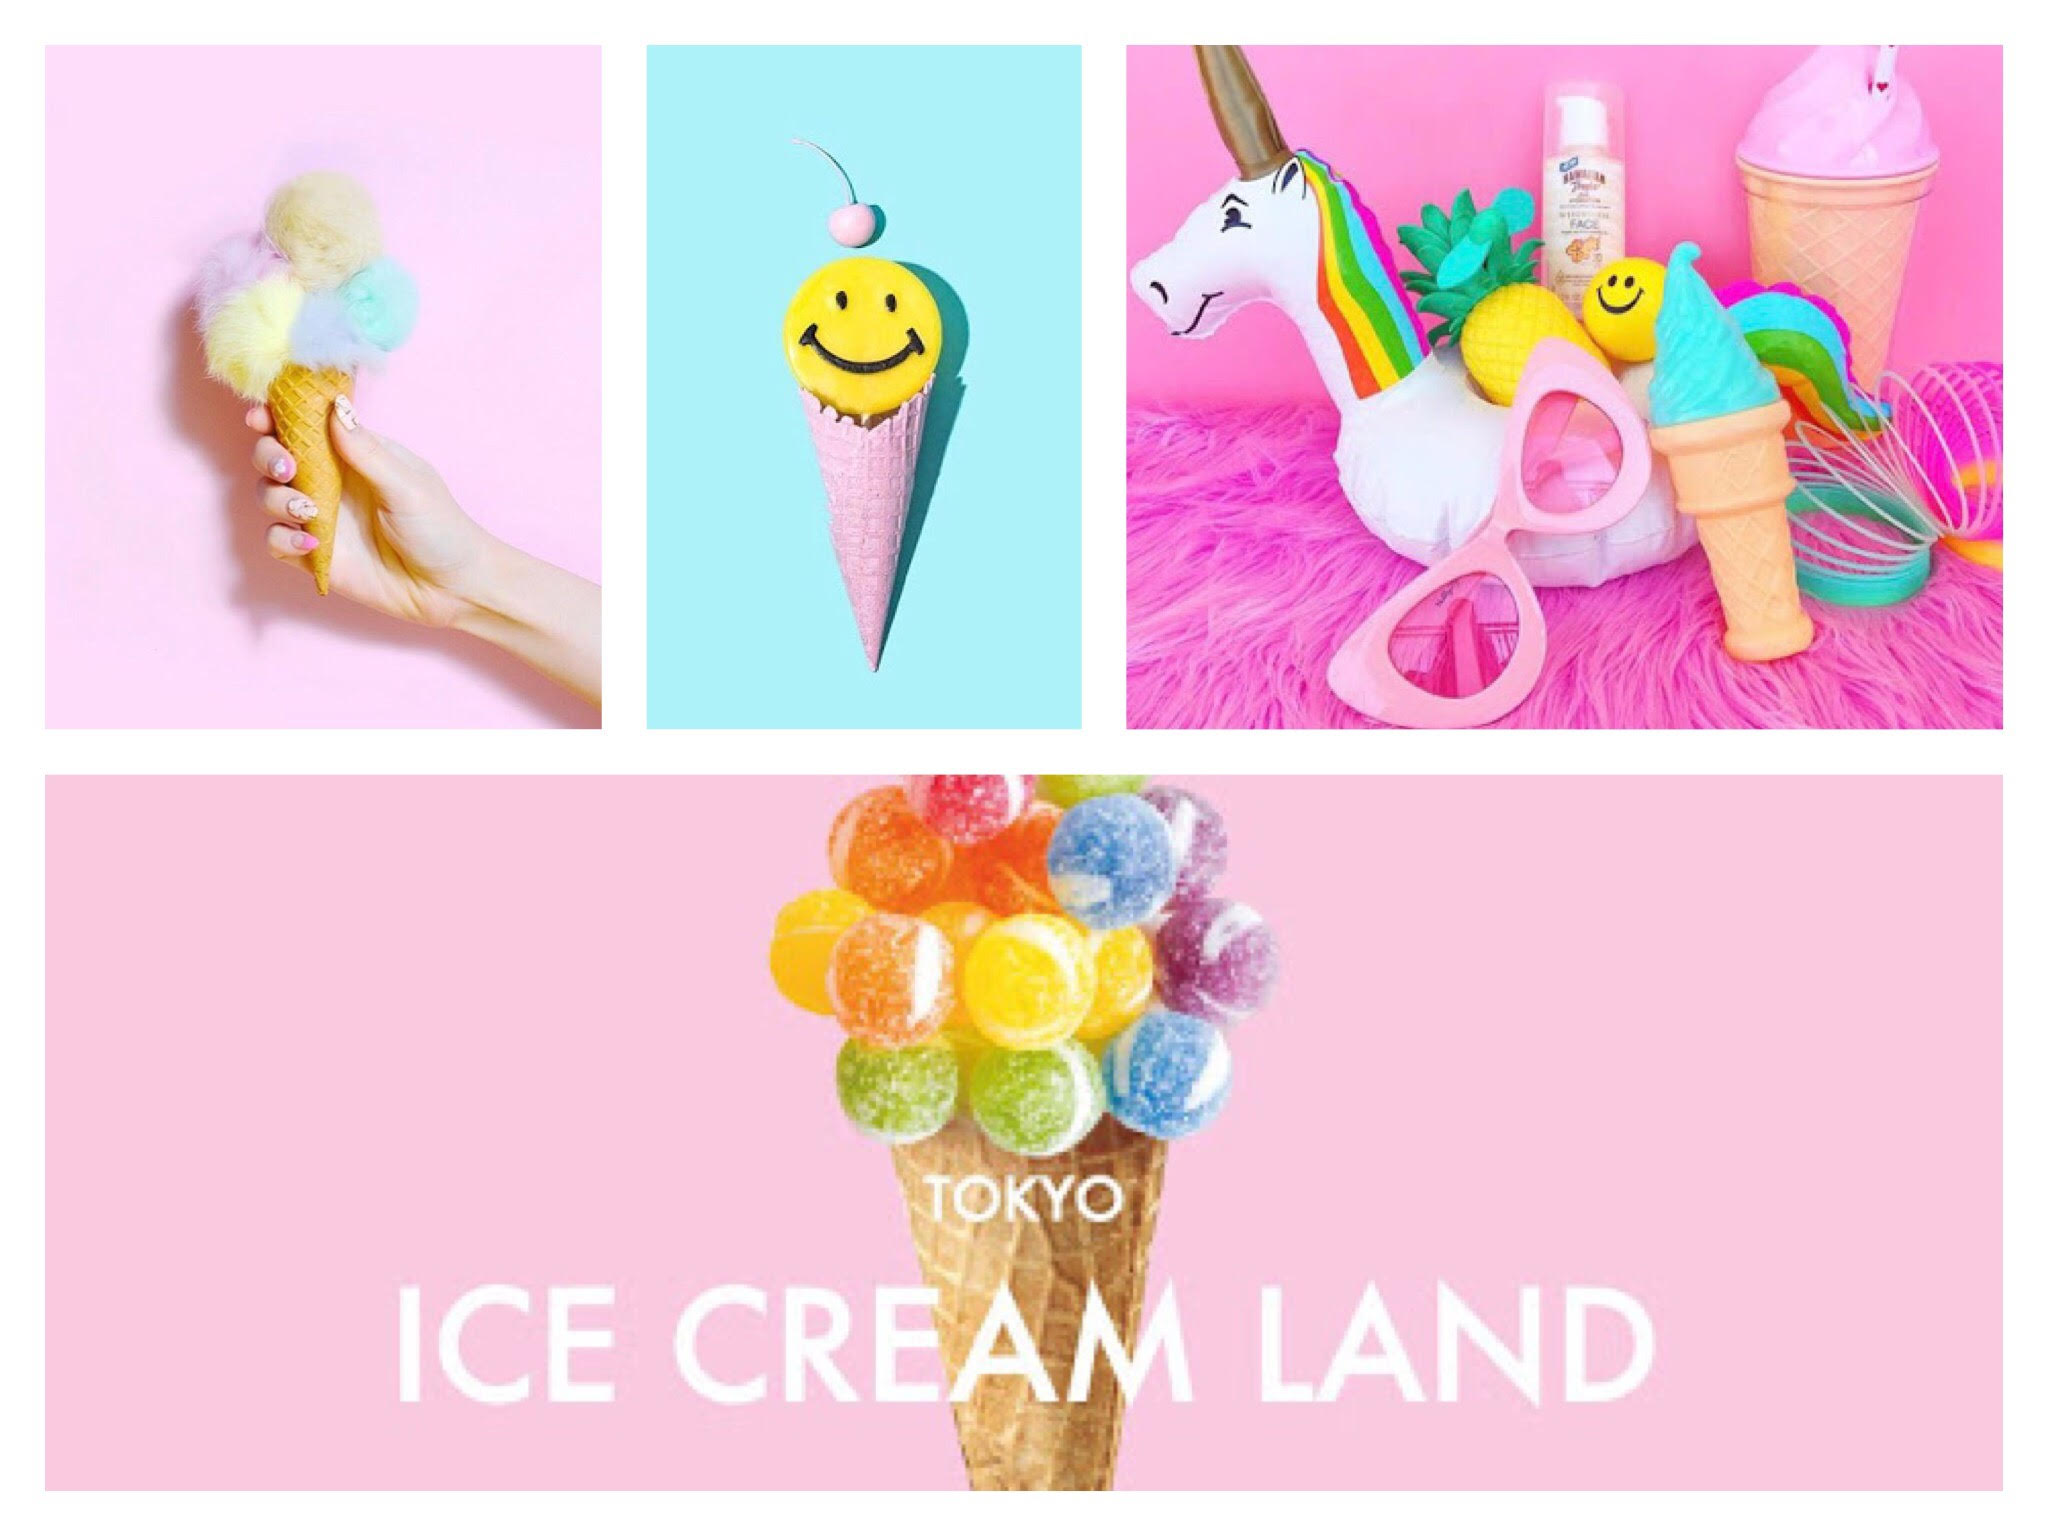 インスタで注目されちゃおう♬最先端フォトジェニックイベント『東京アイスクリームランド』がオープン😆🙌🍦